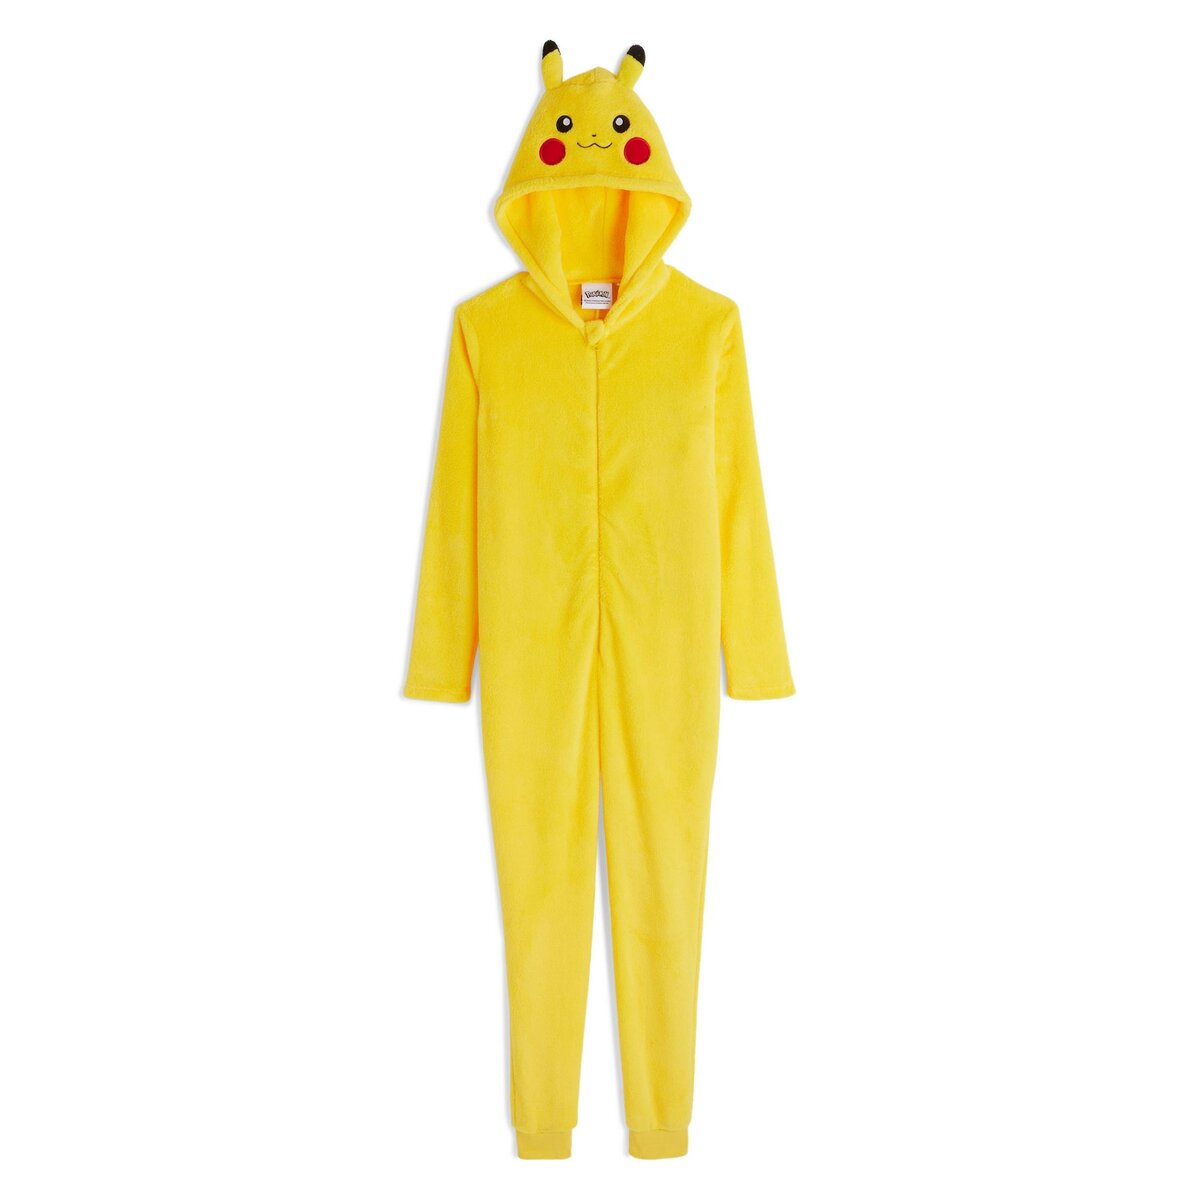 Acheter Pyjama Pokemon Enfant / Kigurumi pas cher